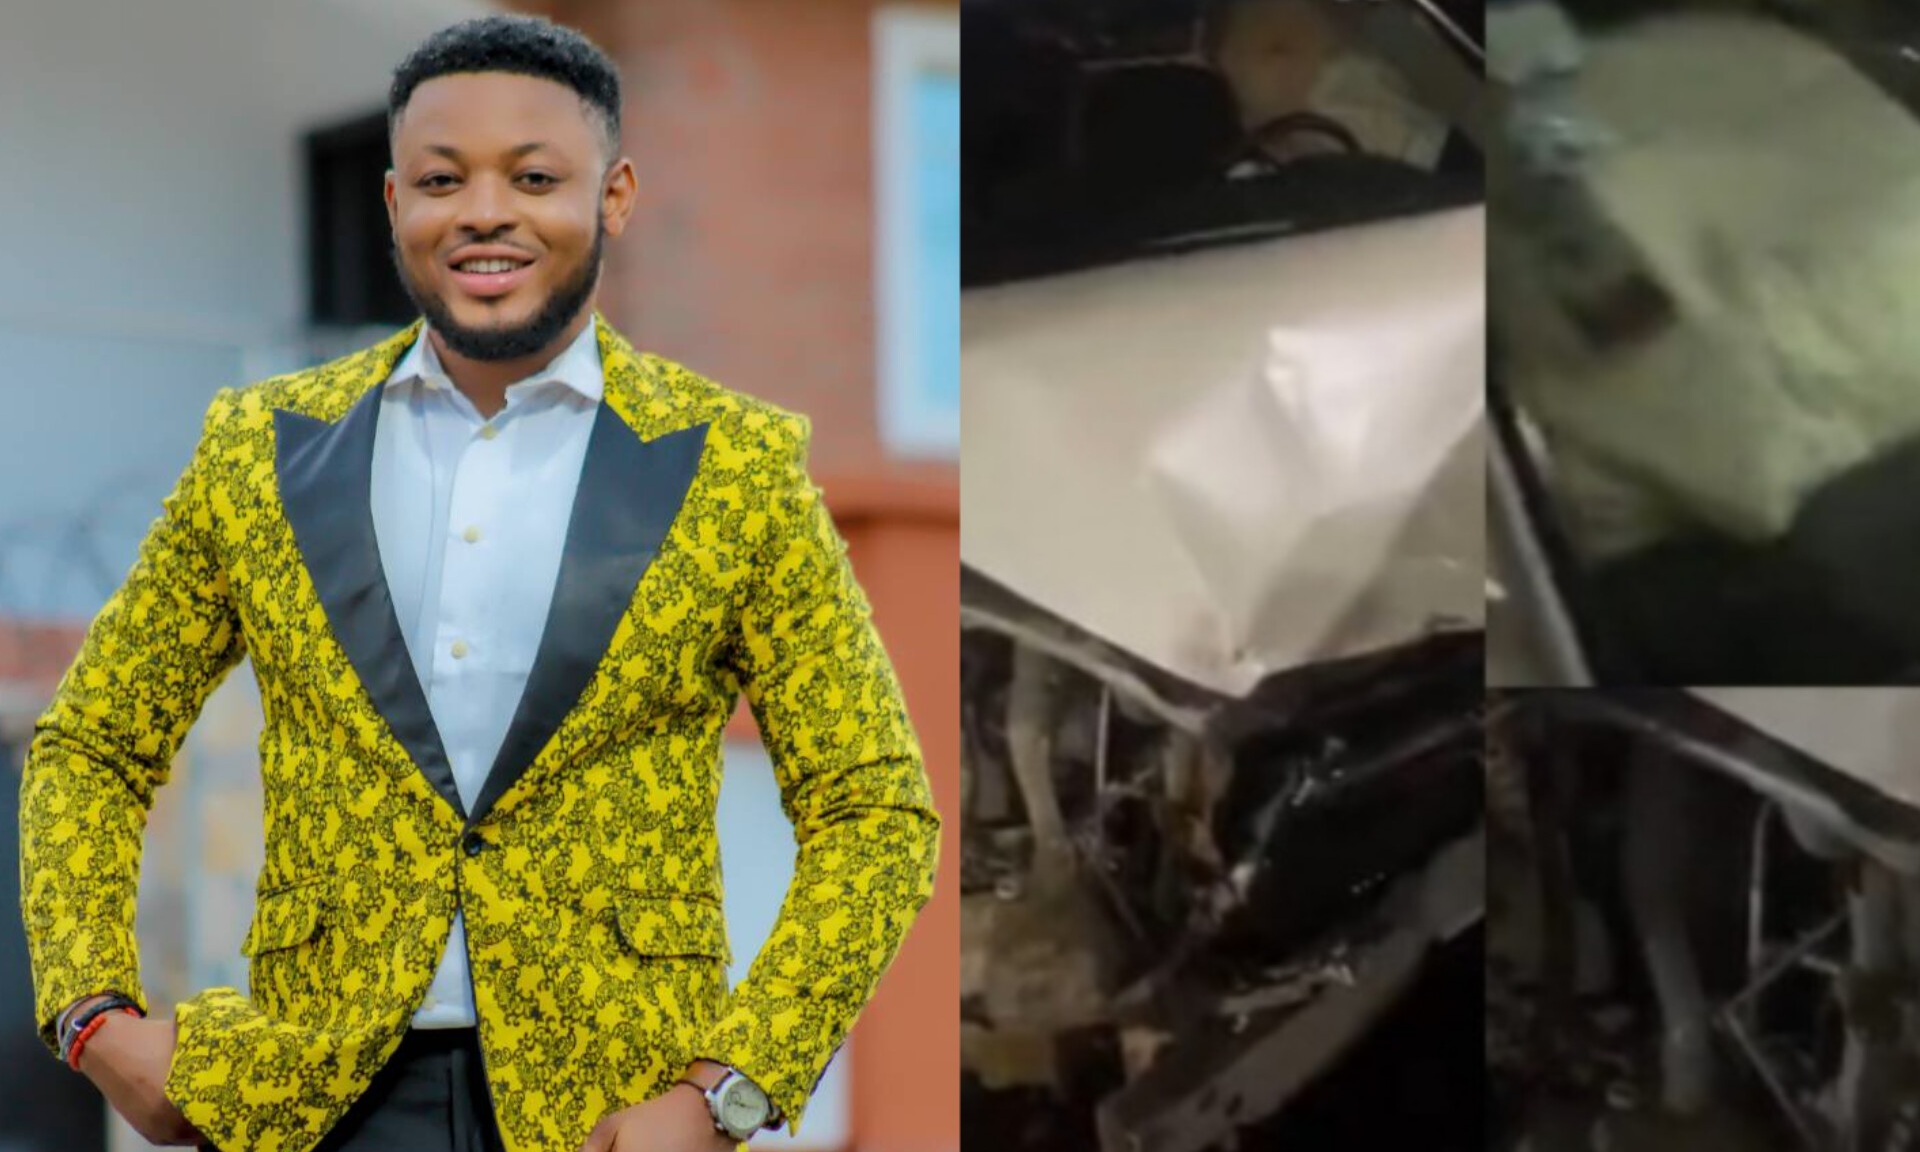 Actor Abiodun Adebanjo in Car Accident, Needs Help"